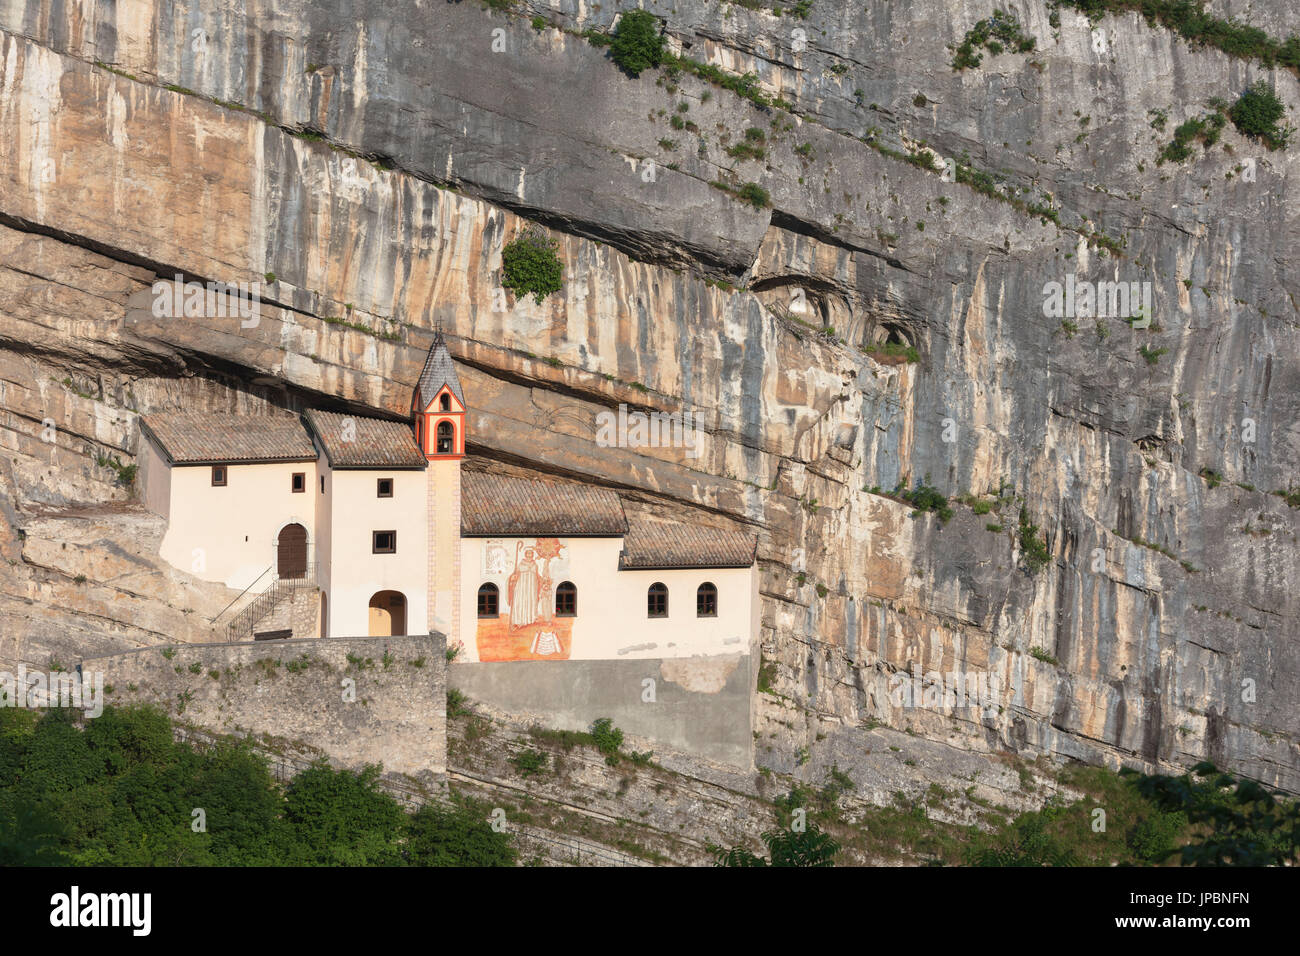 Una vista del Eremo di San Colombano, un monasterio en Trambileno, provincia de Trento, Italia, notable por su ubicación en la ladera de una montaña. Foto de stock